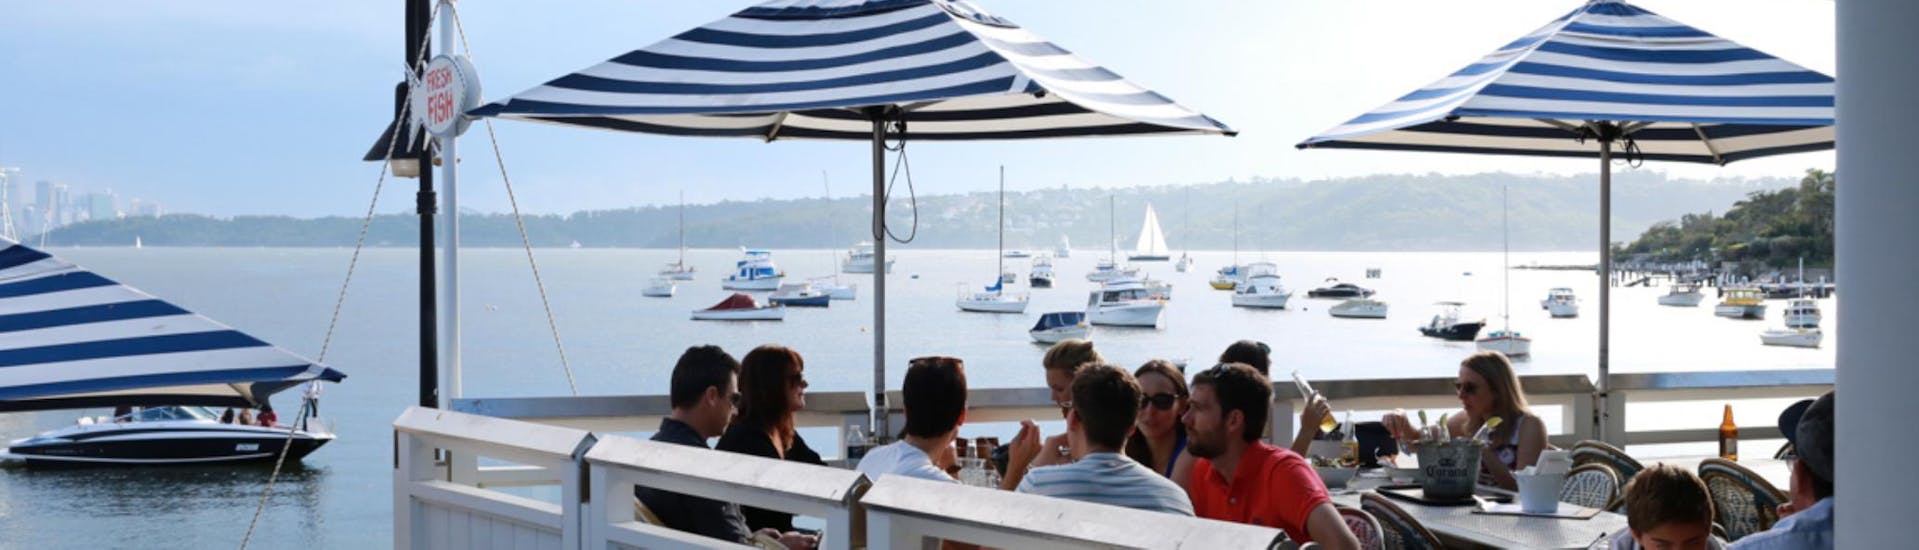 Balade en bateau - Sydney Harbour avec Visites touristiques.